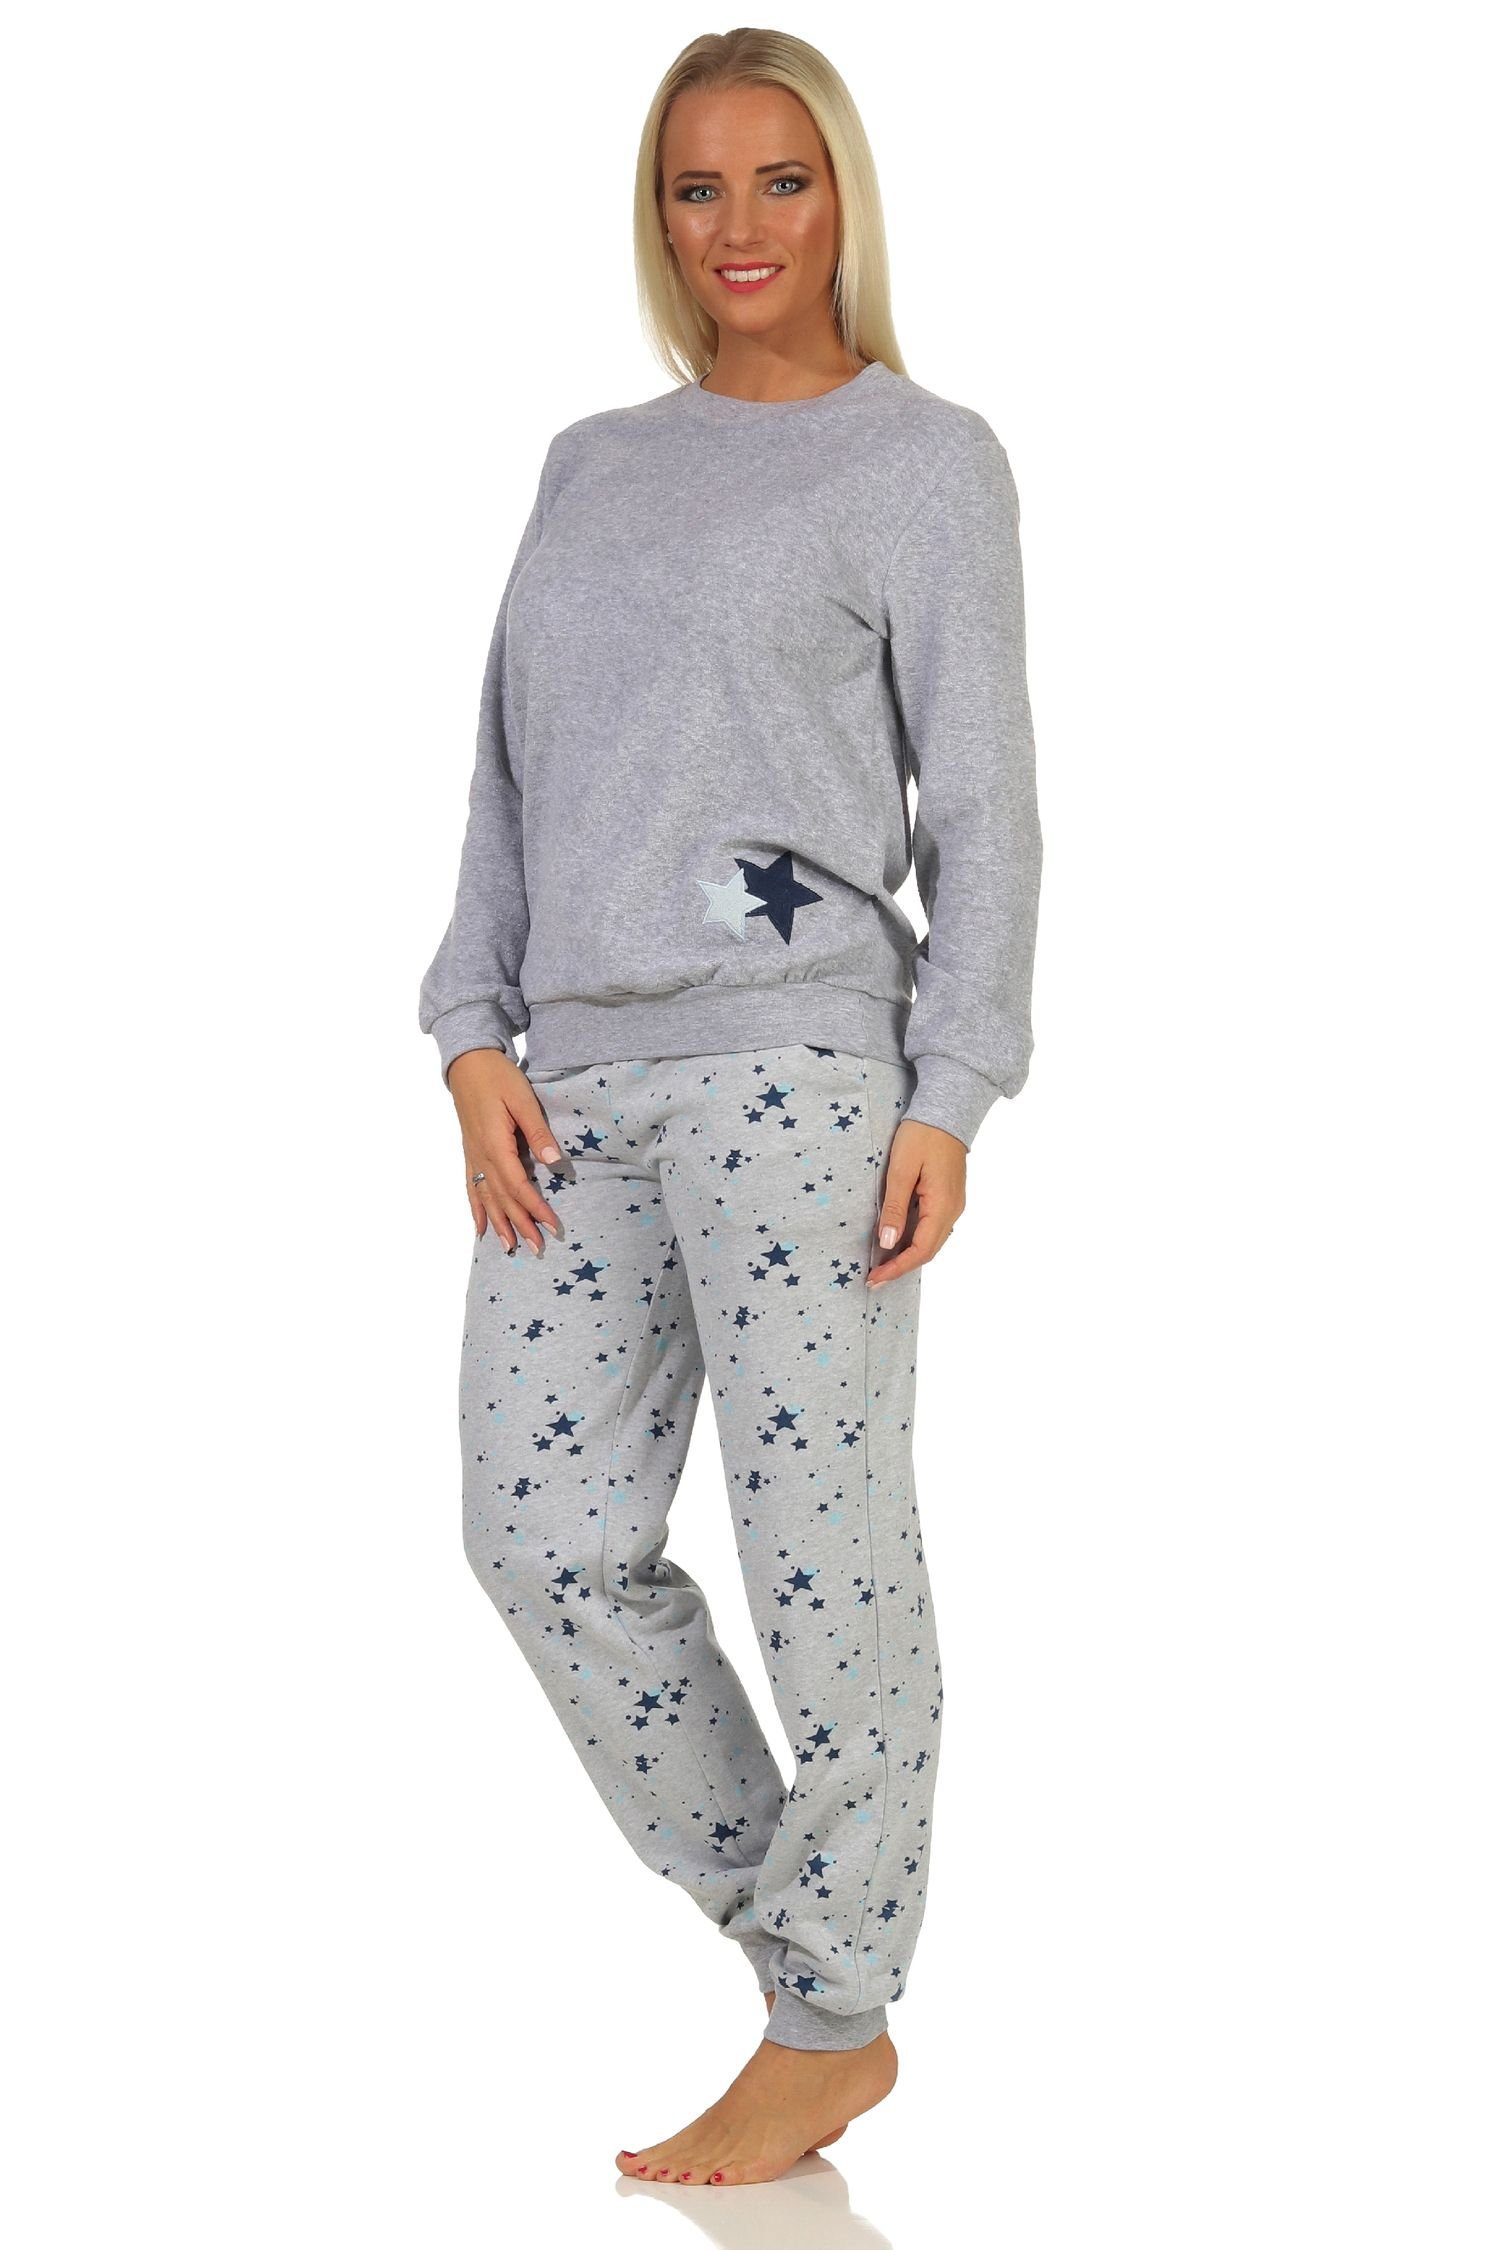 grau-melange Normann Frottee Damen mit Sterne -auch Pyjama Motiv Übergröße Pyjama Bündchen als in